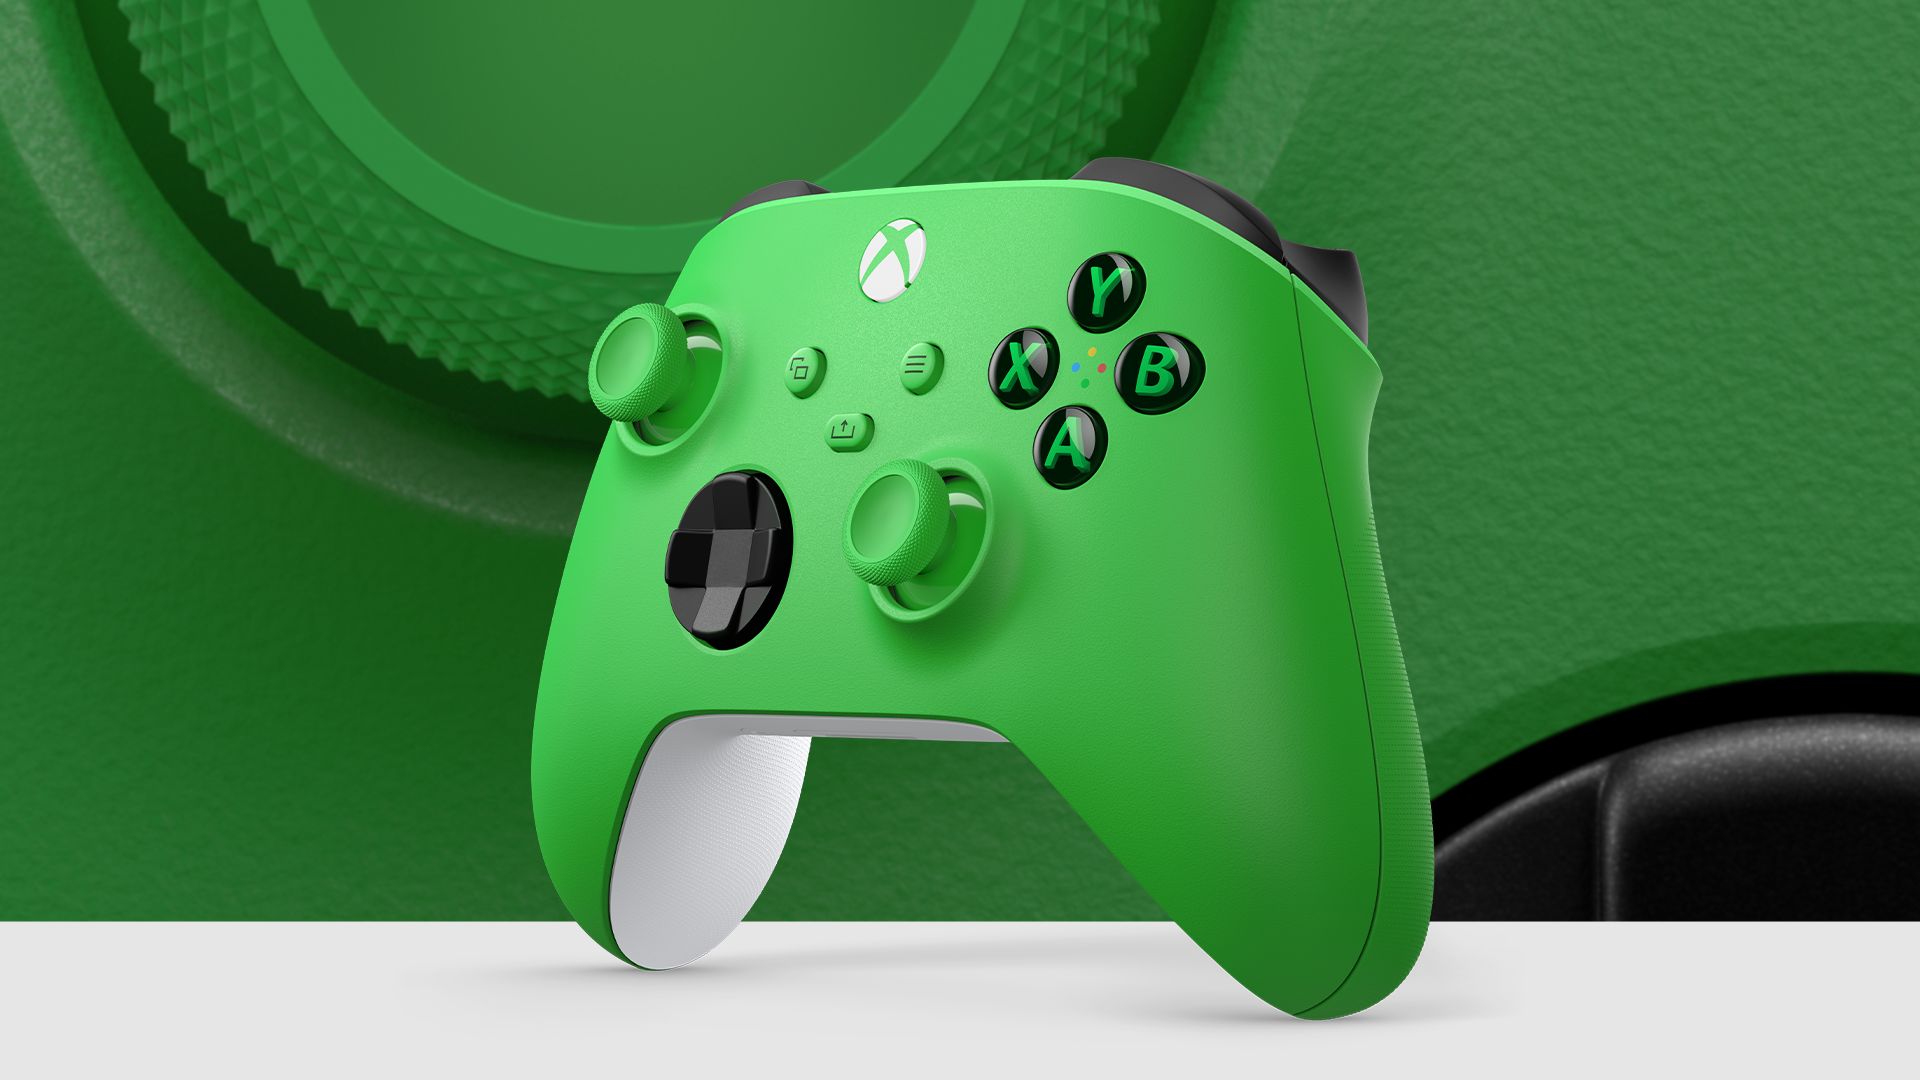 Blokkeert Xbox actief draadloze controllers van derden?